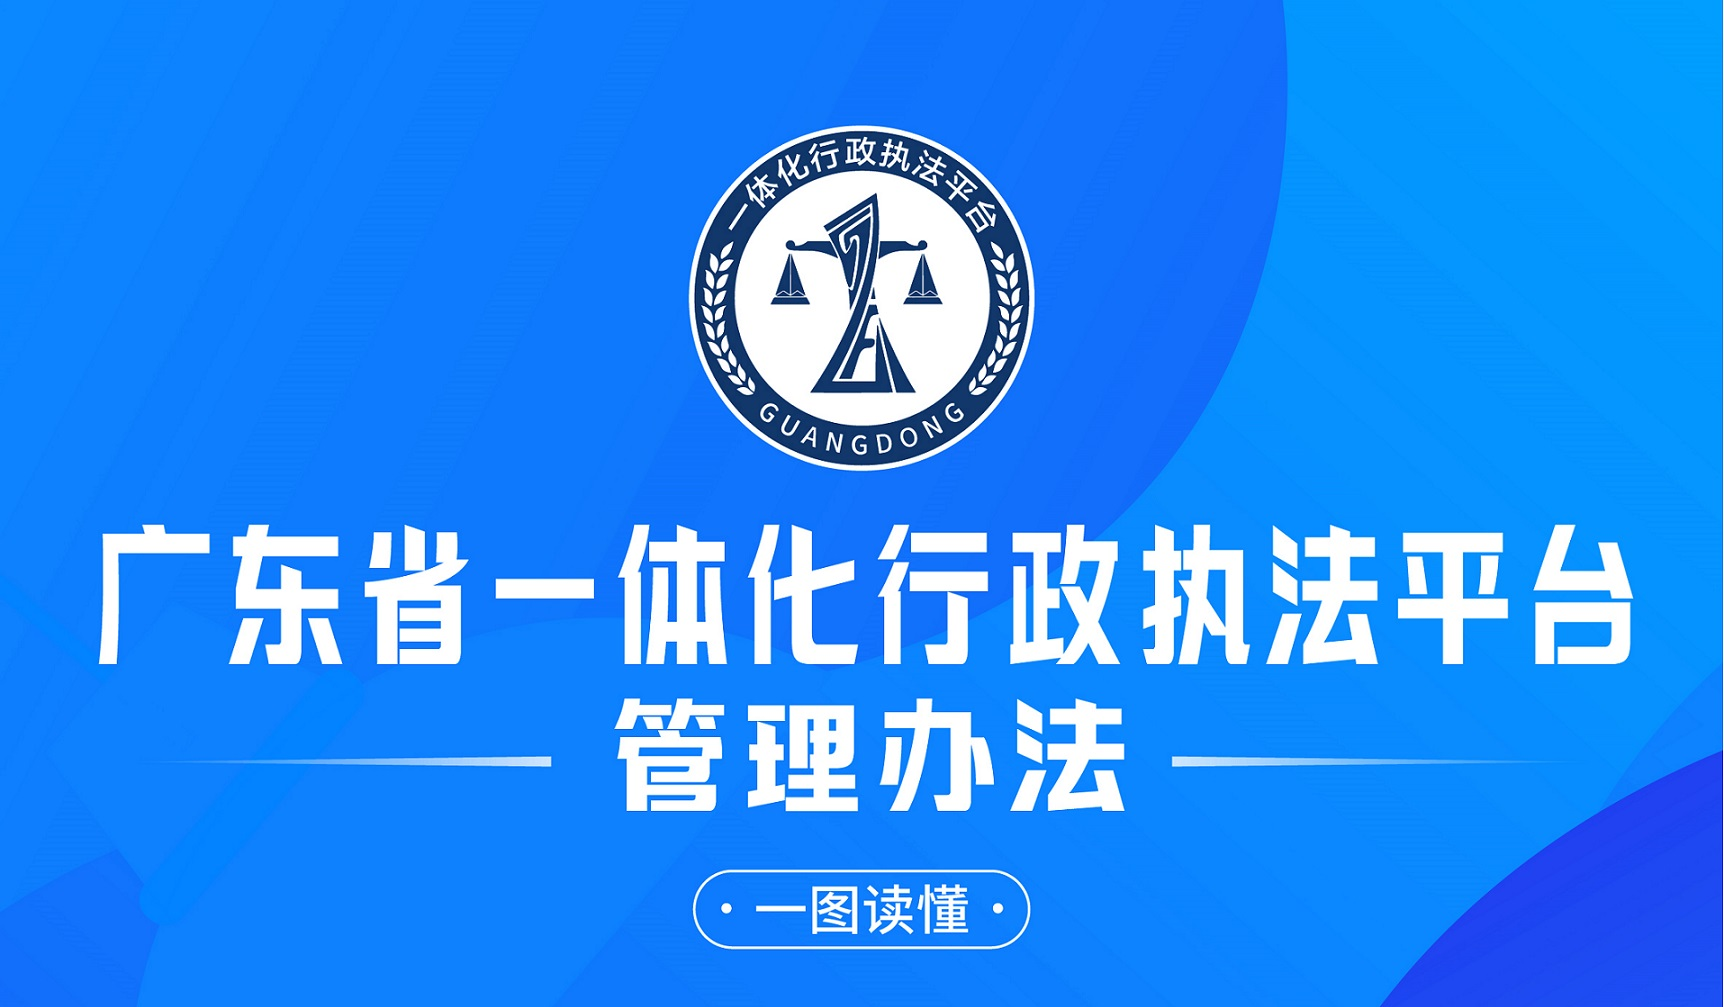 广东发布一体化行政执法平台管理办法 全流程公开透明智能监督